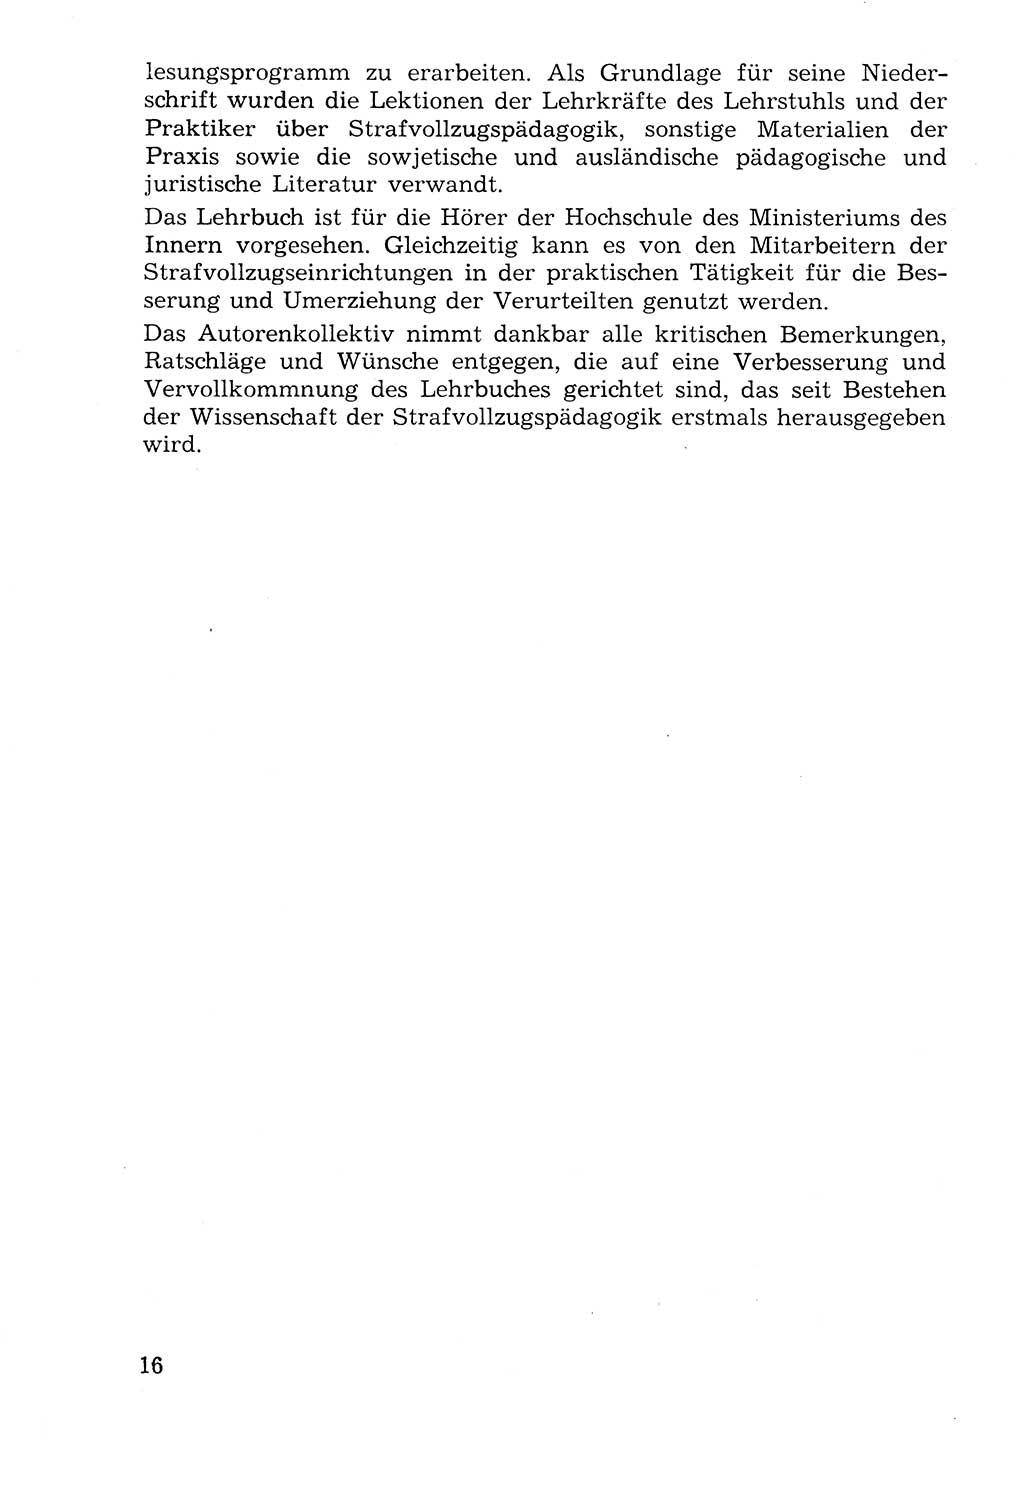 Lehrbuch der Strafvollzugspädagogik [Deutsche Demokratische Republik (DDR)] 1969, Seite 16 (Lb. SV-Pd. DDR 1969, S. 16)